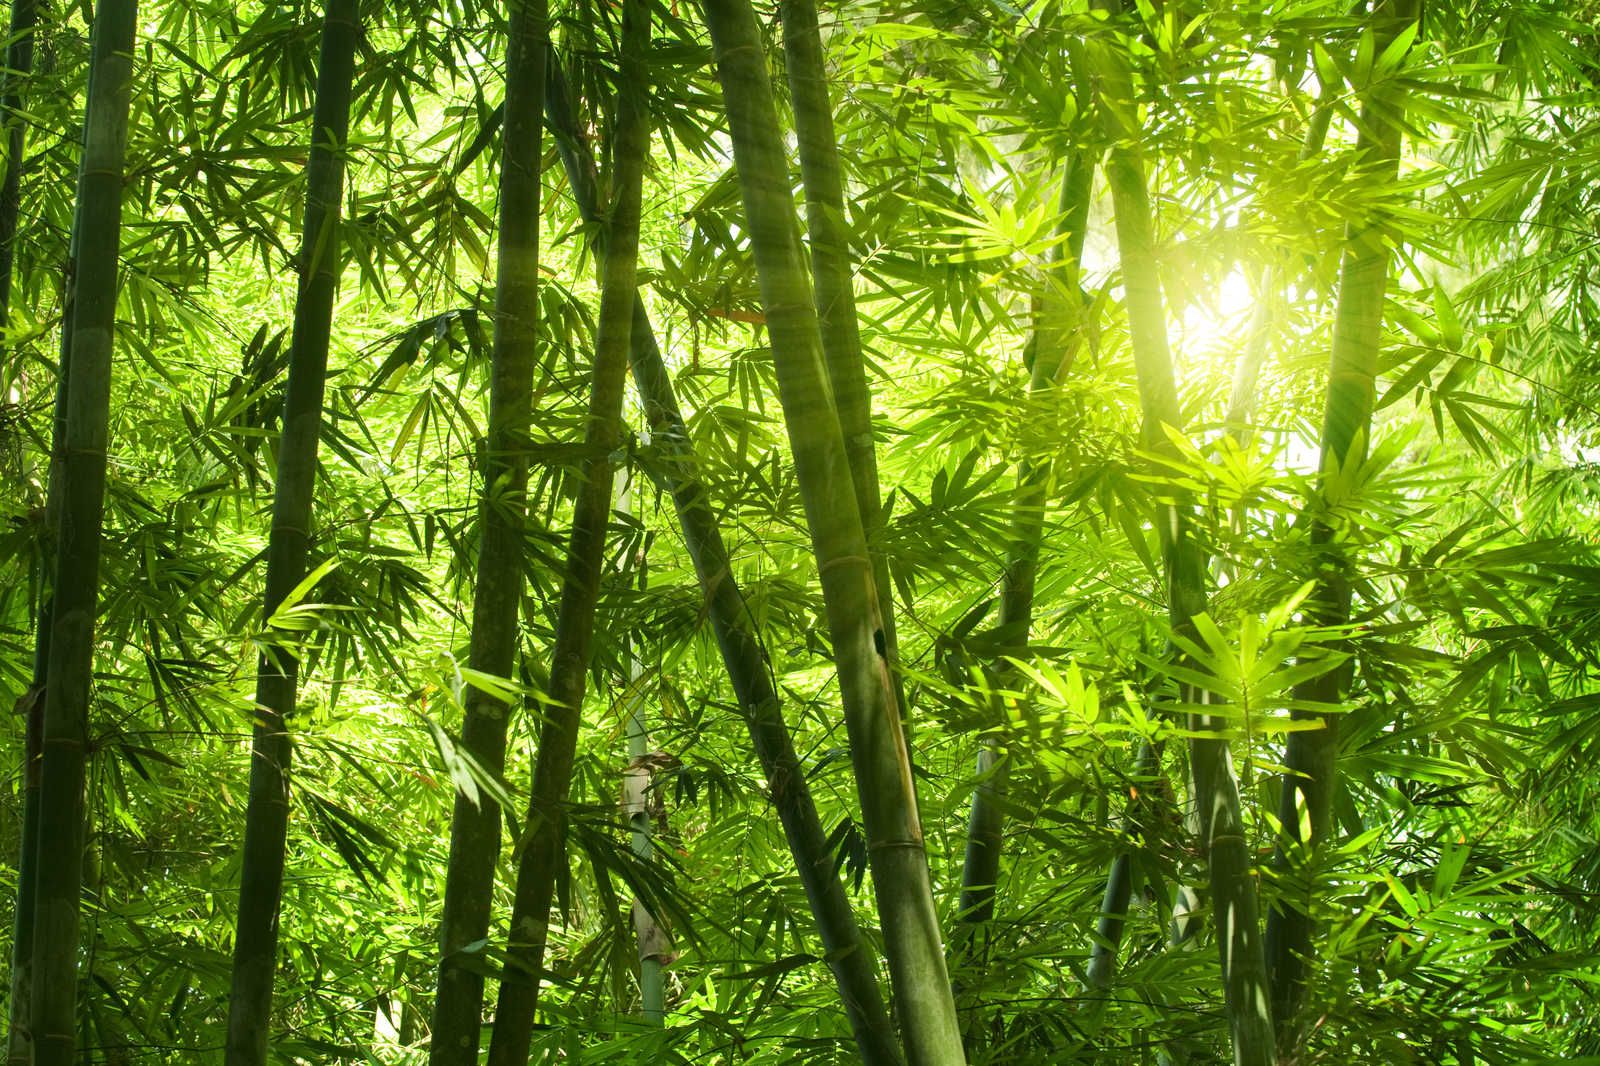             Cuadro en lienzo Bambú y hojas - 0,90 m x 0,60 m
        